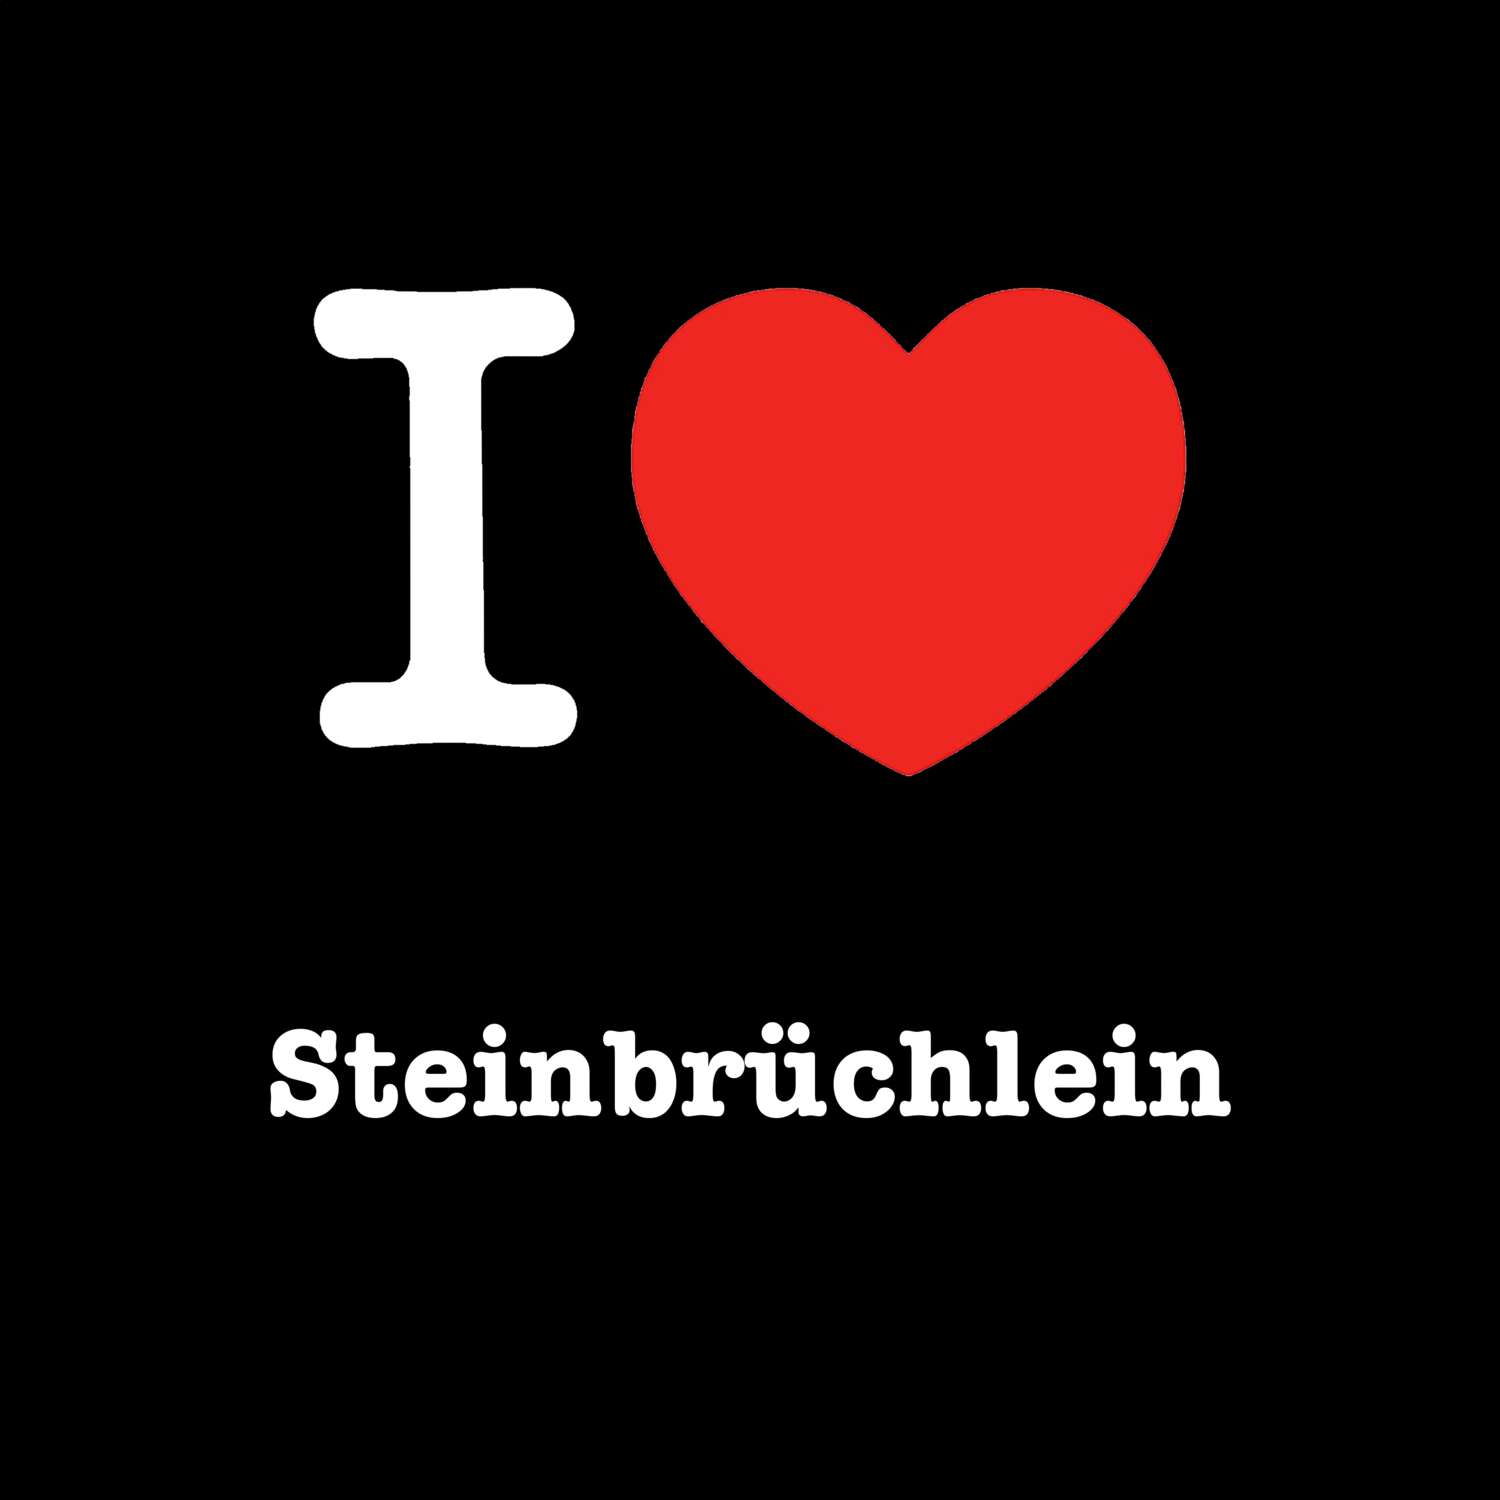 Steinbrüchlein T-Shirt »I love«